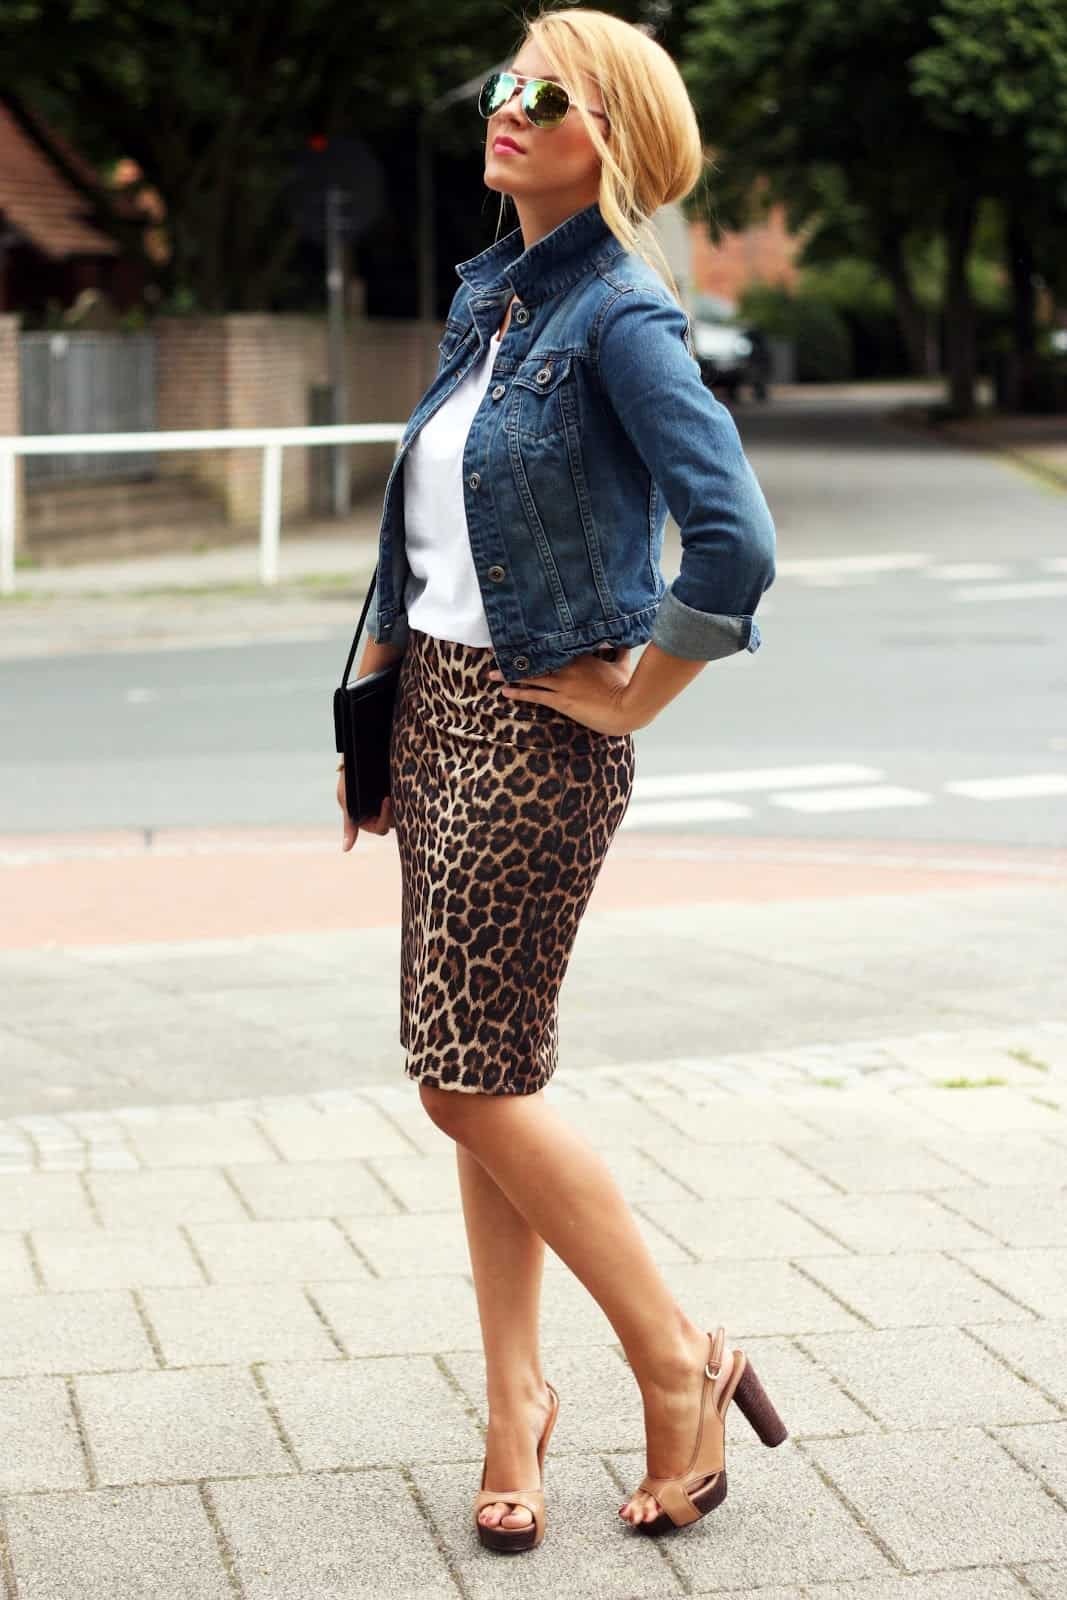 Leopard pencil skirt